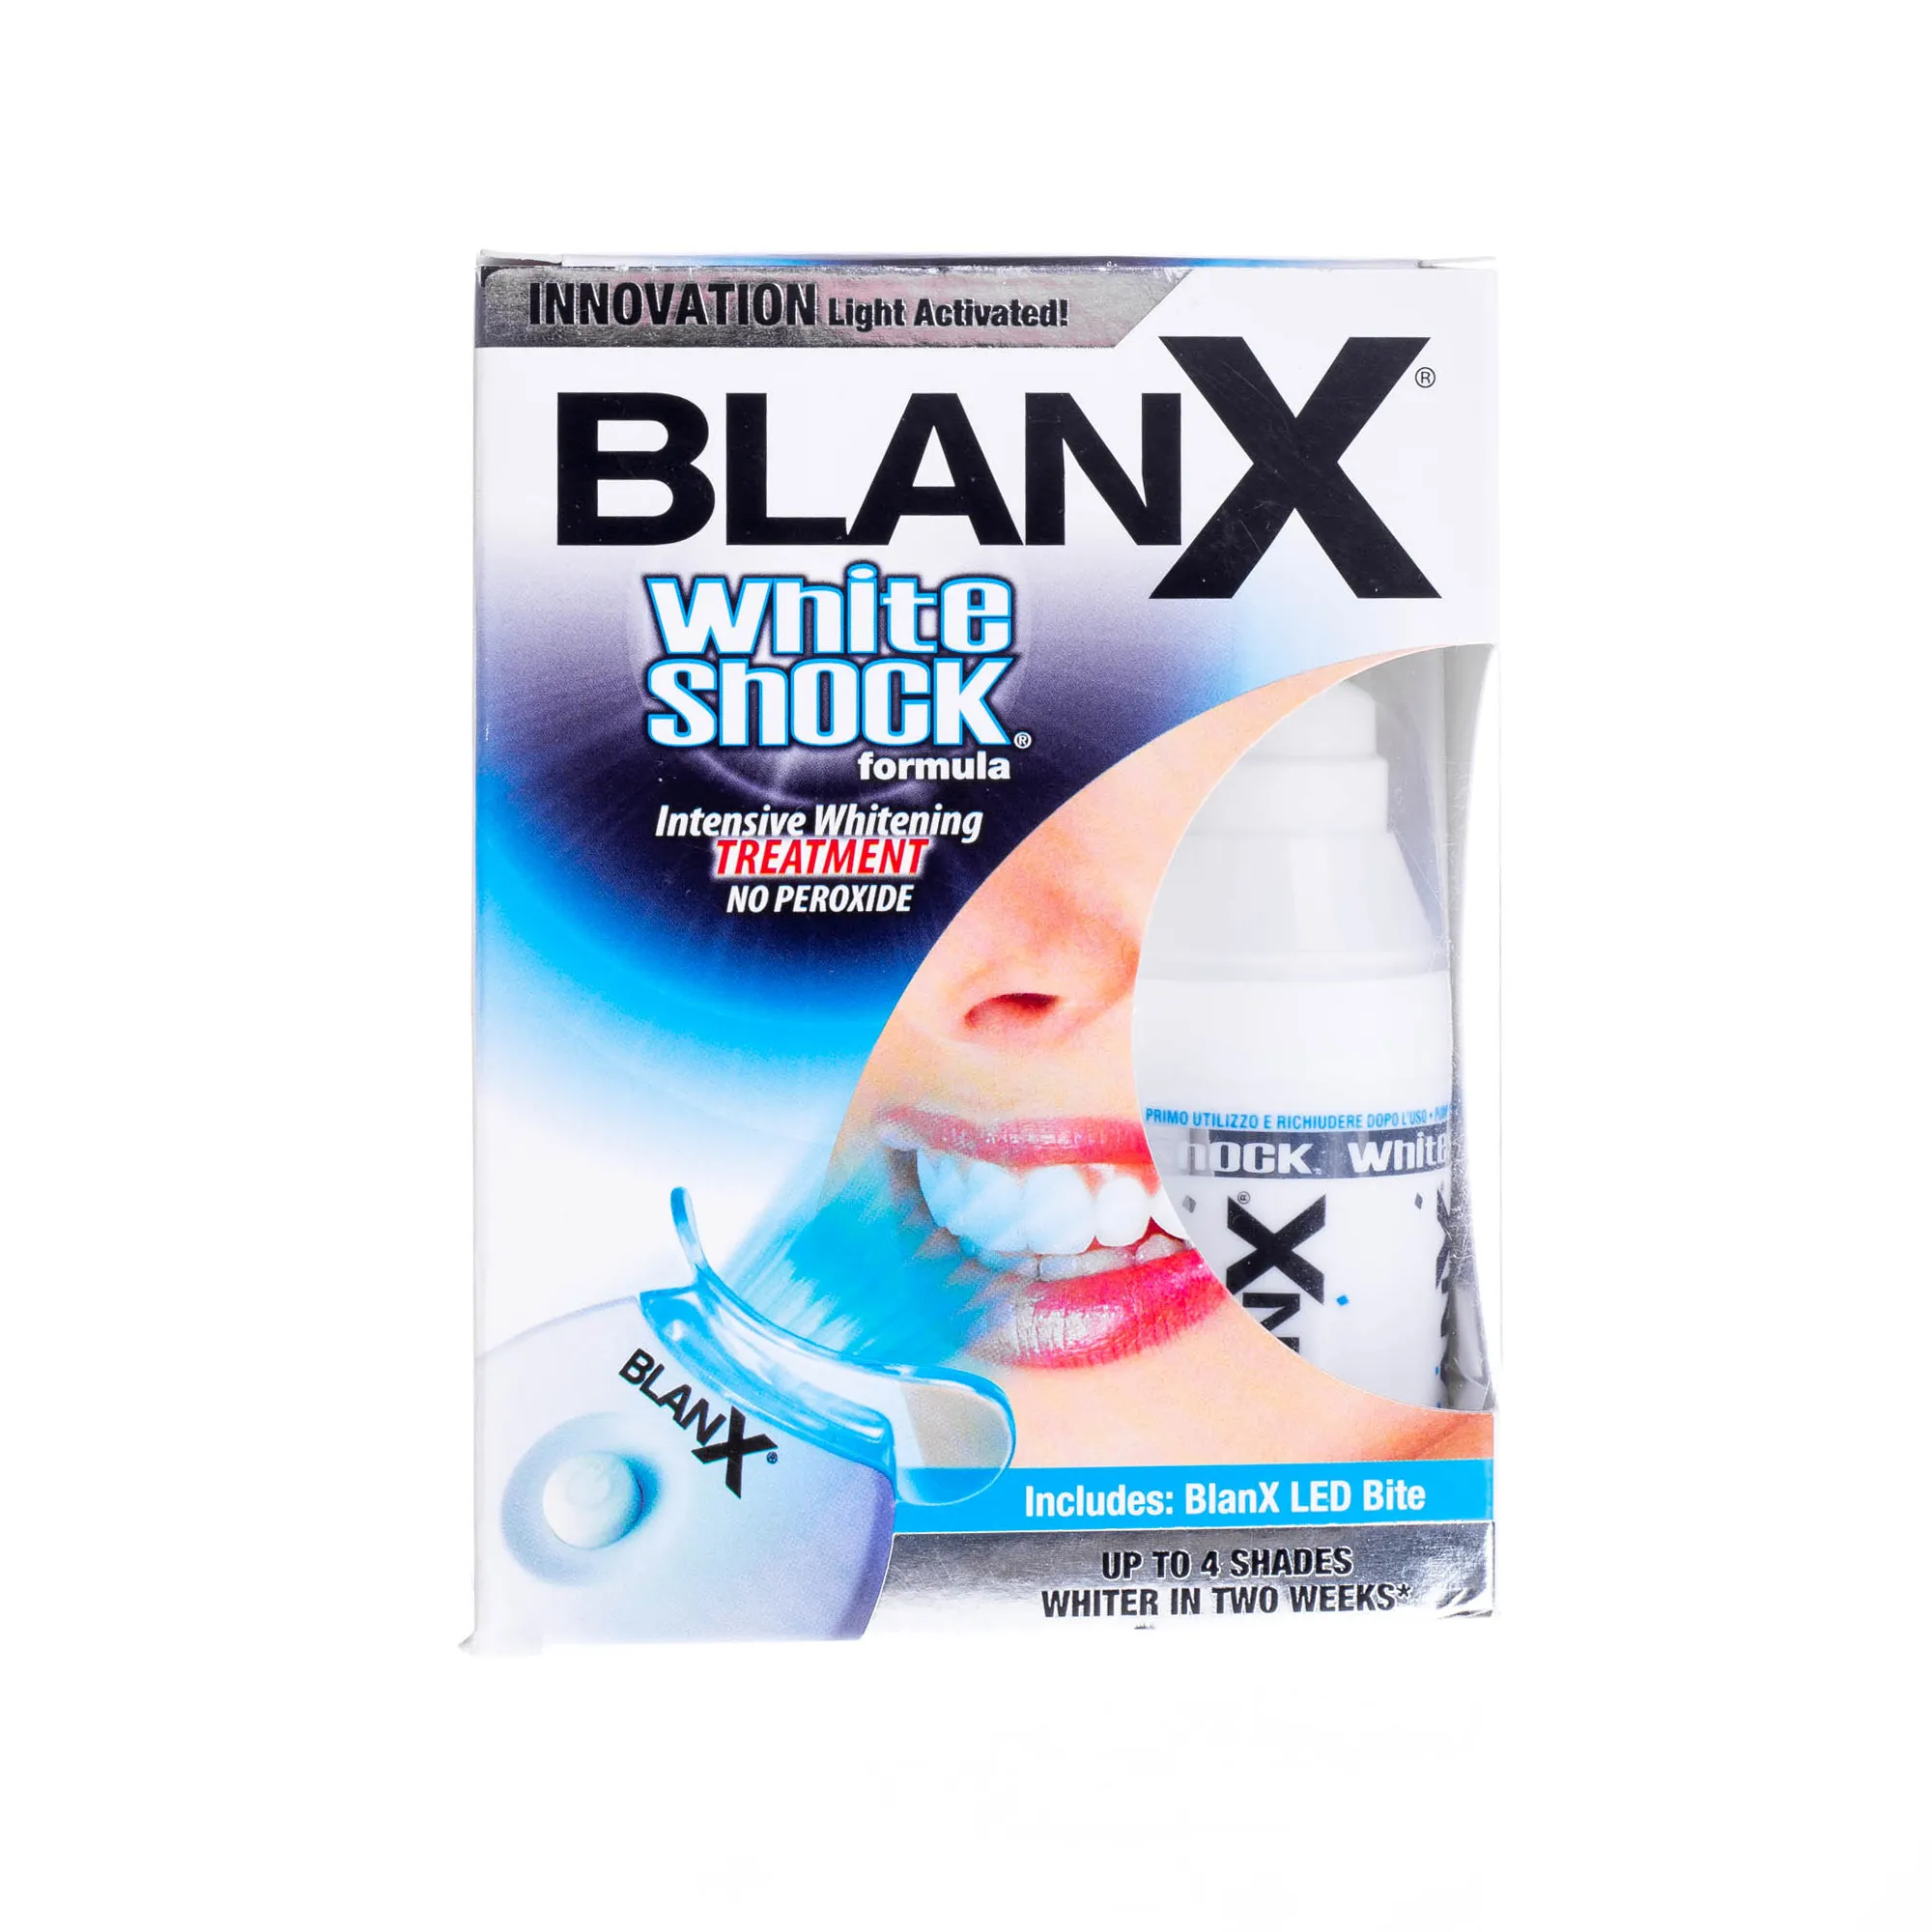 BlanX White Shock pasta do zębów intensywnie wybielająca  30ml + BlanX Led Bite